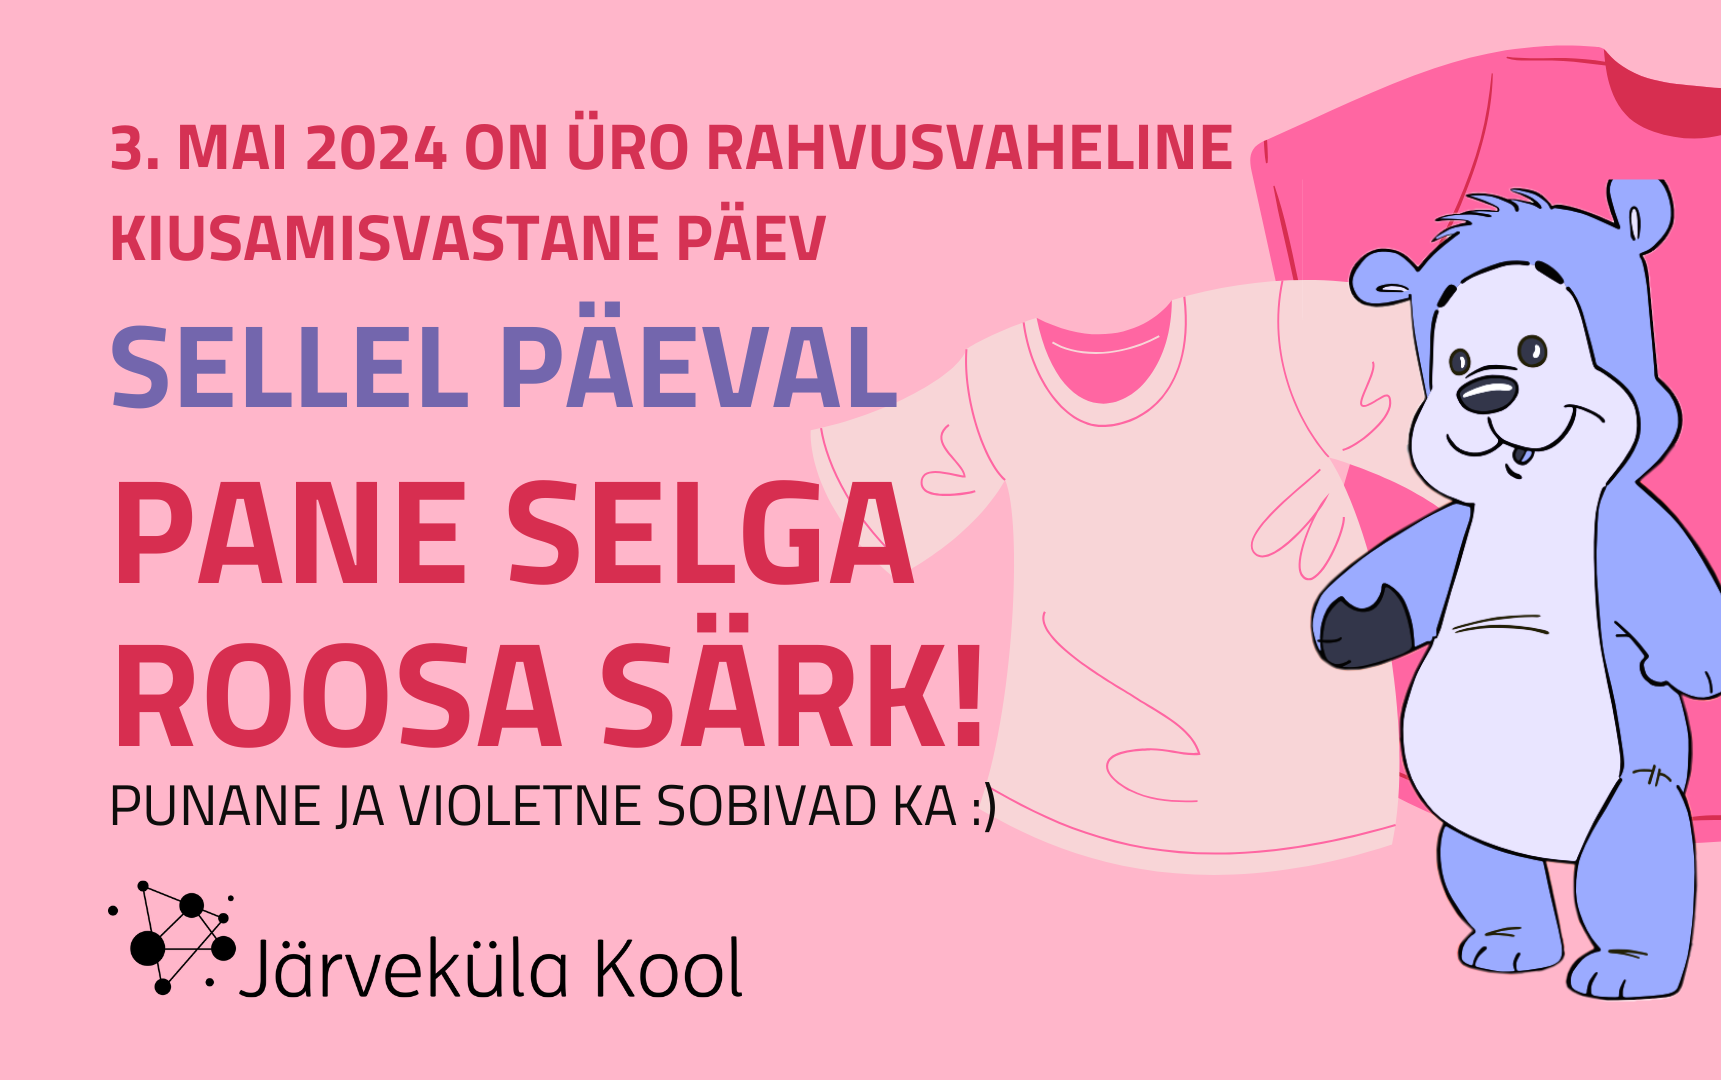 3. mail tähistatakse Järveküla koolis ÜRO kiusamisvastane päeva. Pane sellel päeval selga roosa särk, punane ja violetne sobivad ka 🙂 Kanna roosat särki: Kutsum